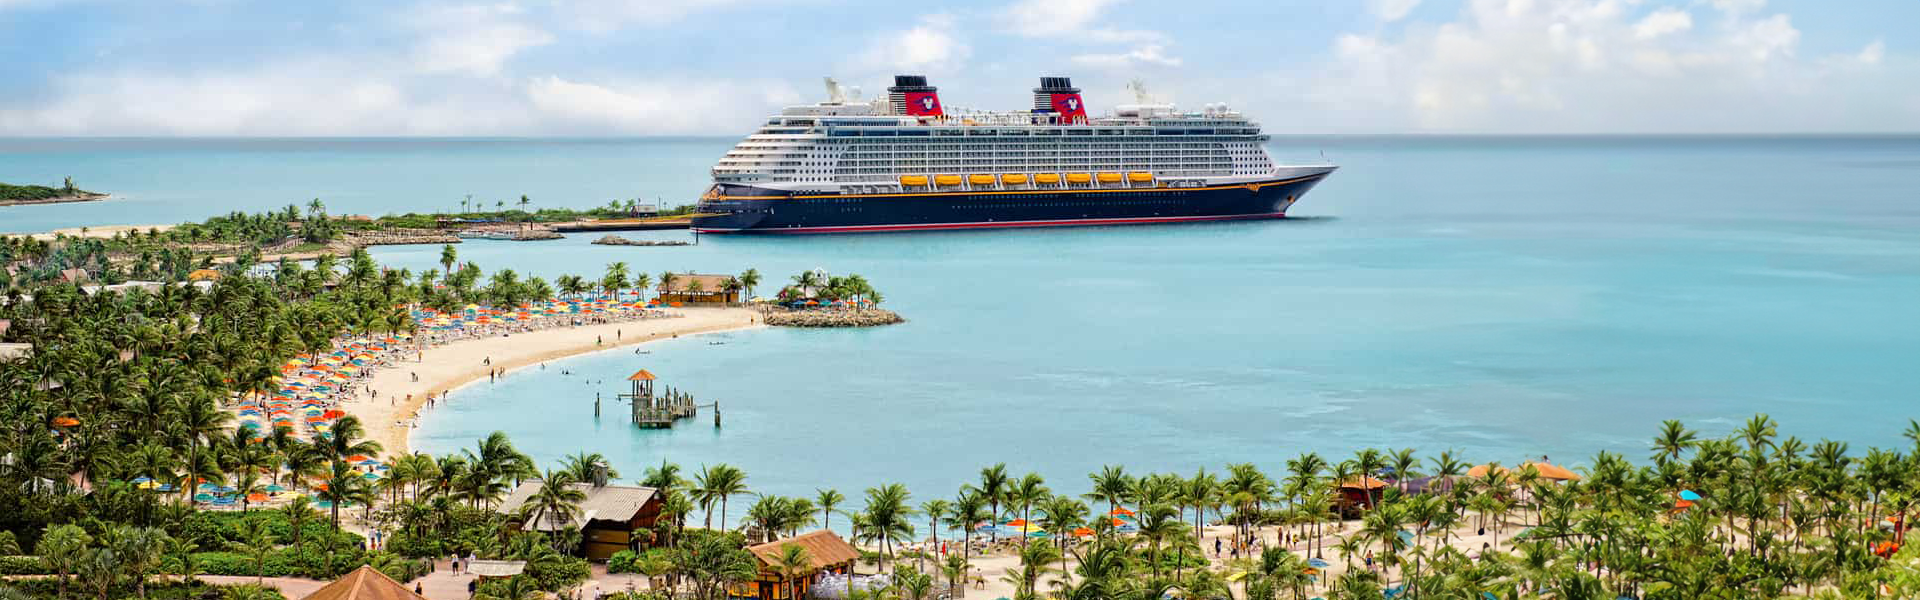 Scopri le nostre offerte a bordo delle magiche navi Disney!